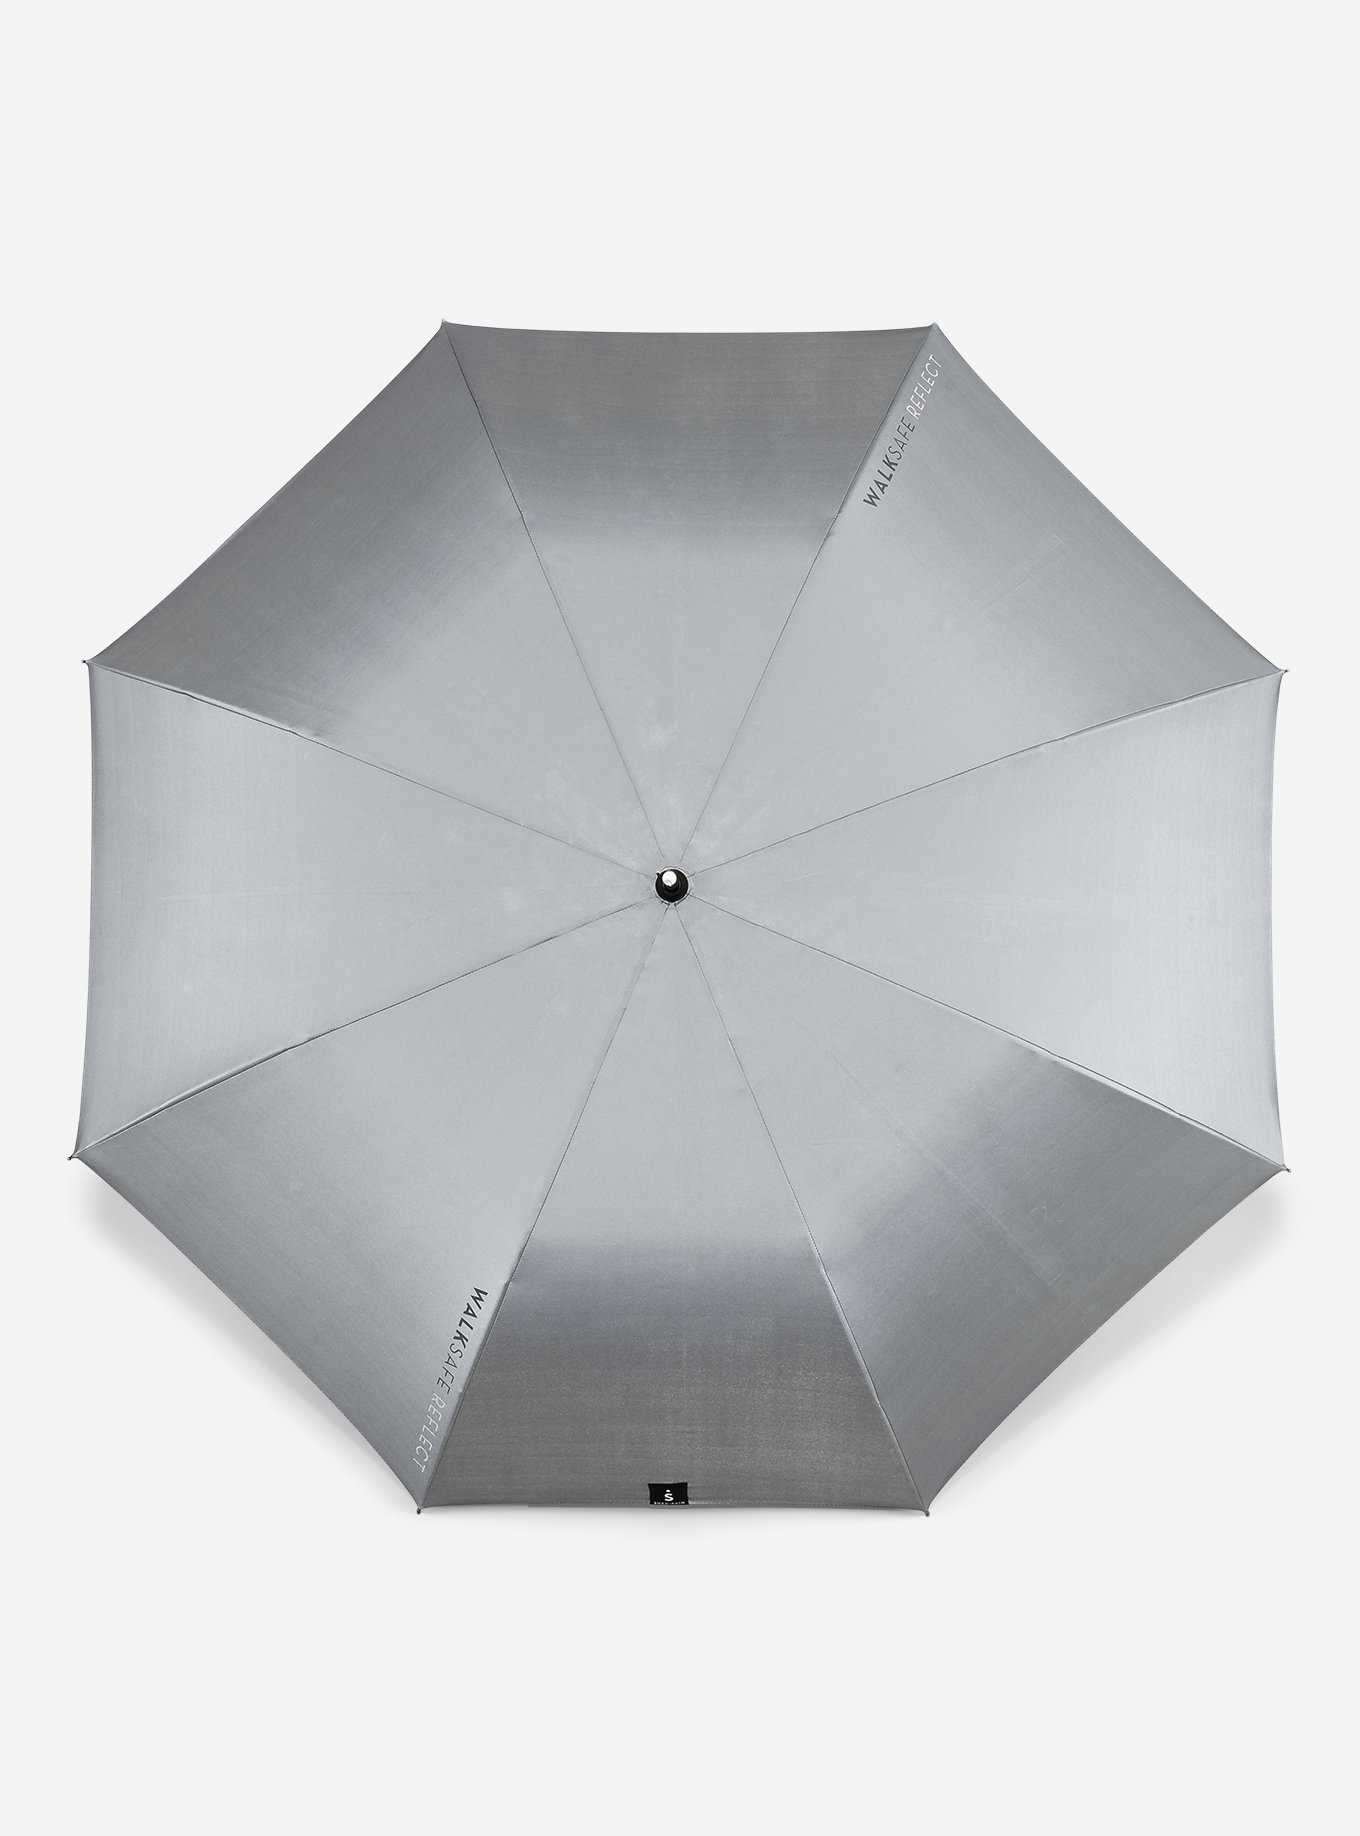 Walksafe Reflective Umbrella, , hi-res